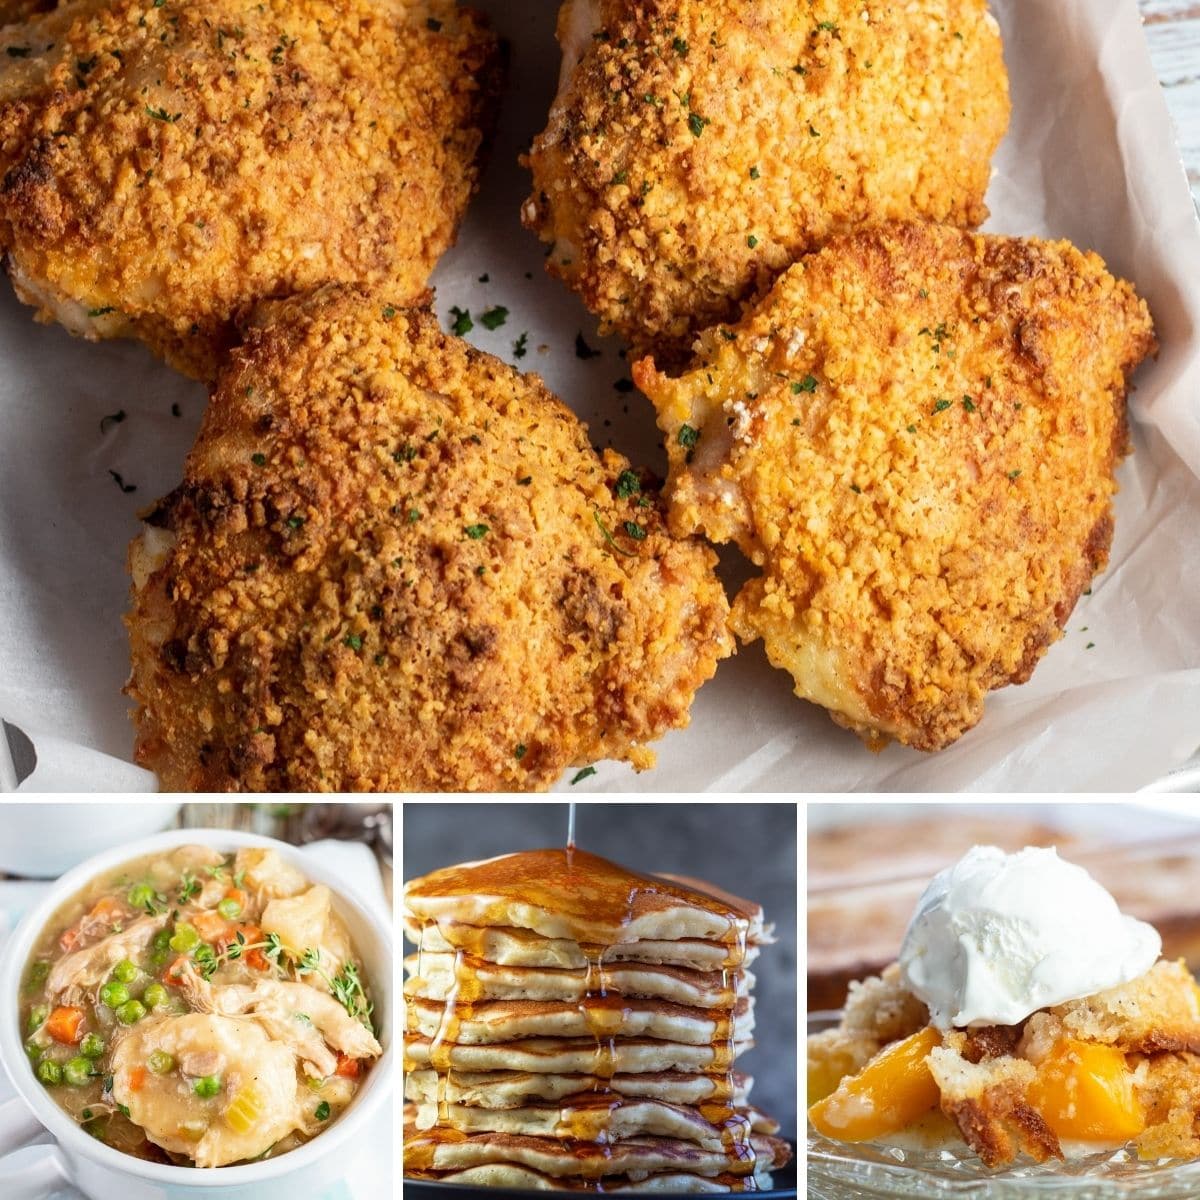 La mejor imagen de collage de recetas de Bisquick con 4 paneles.